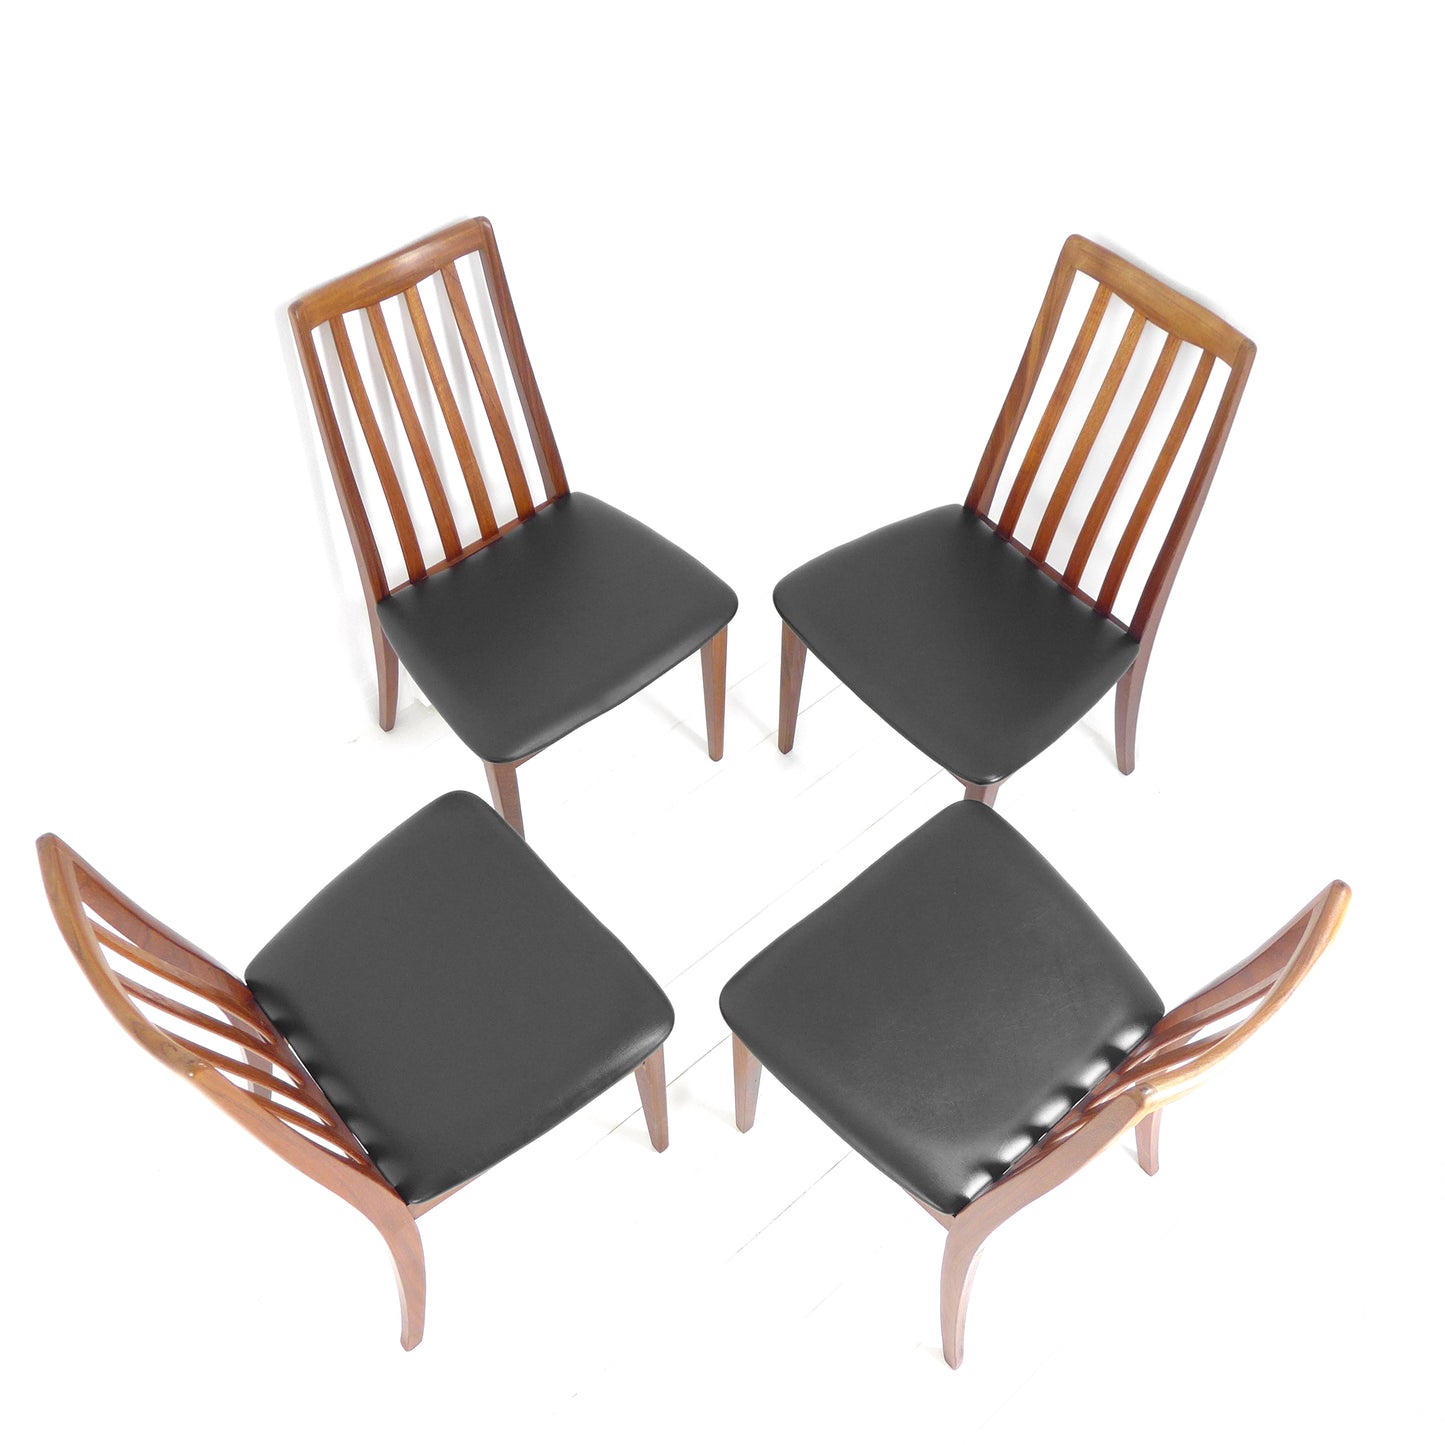 Refurbished G PLAN Fresco Dining Chairs - Mid Century Teak Set of 4